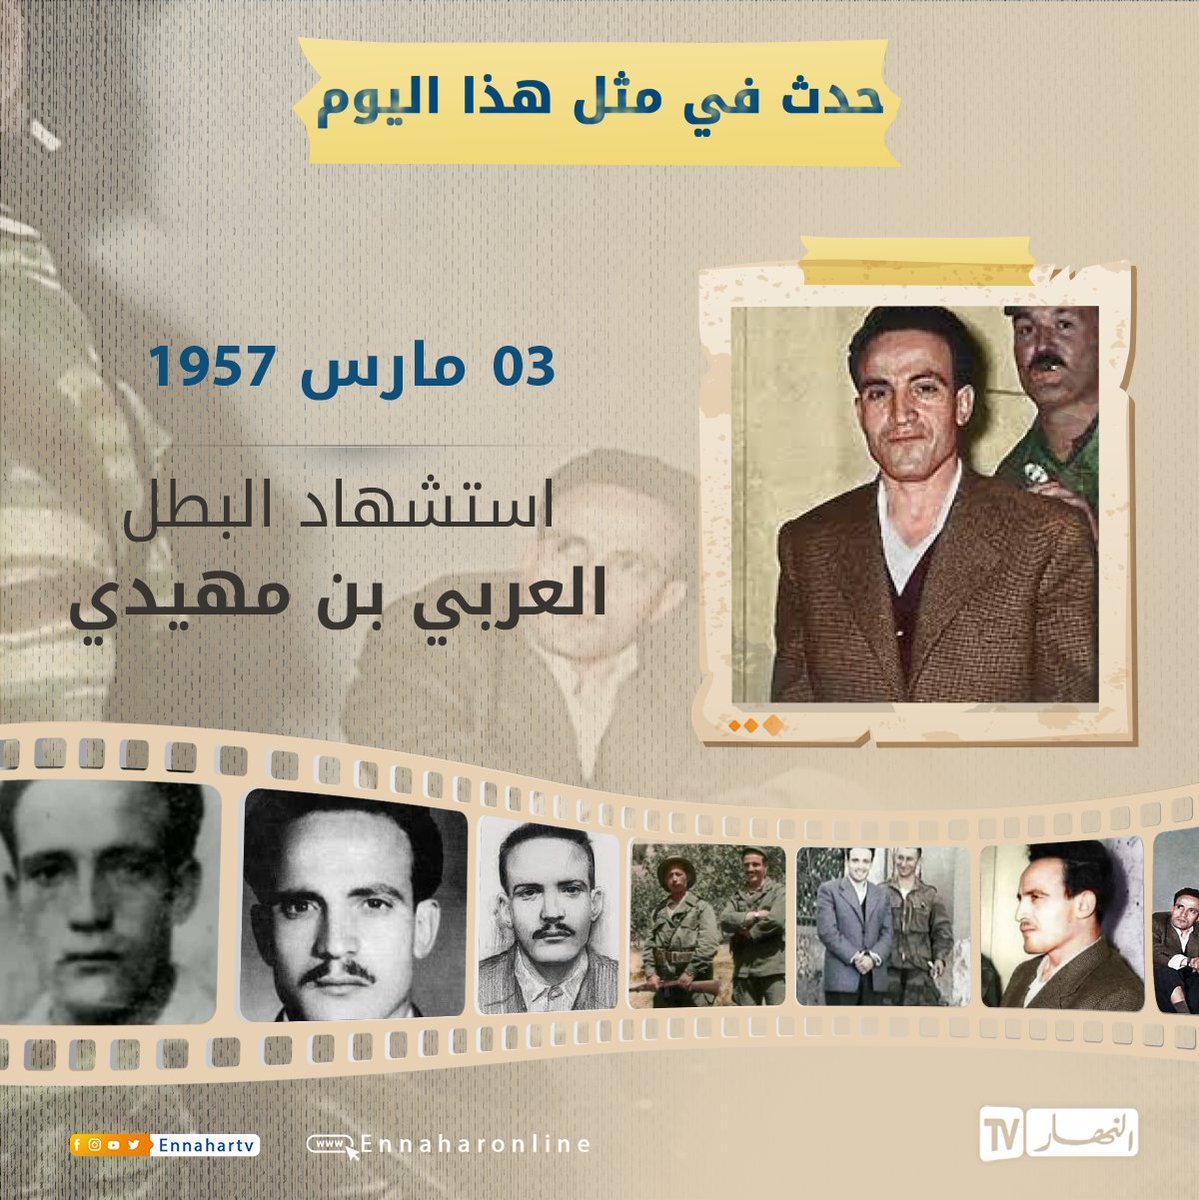 في مثل هذا اليوم.. 3 مارس 1957 استشهد بطل ثورة التحرير العربي بن مهيدي 🇩🇿🇩🇿